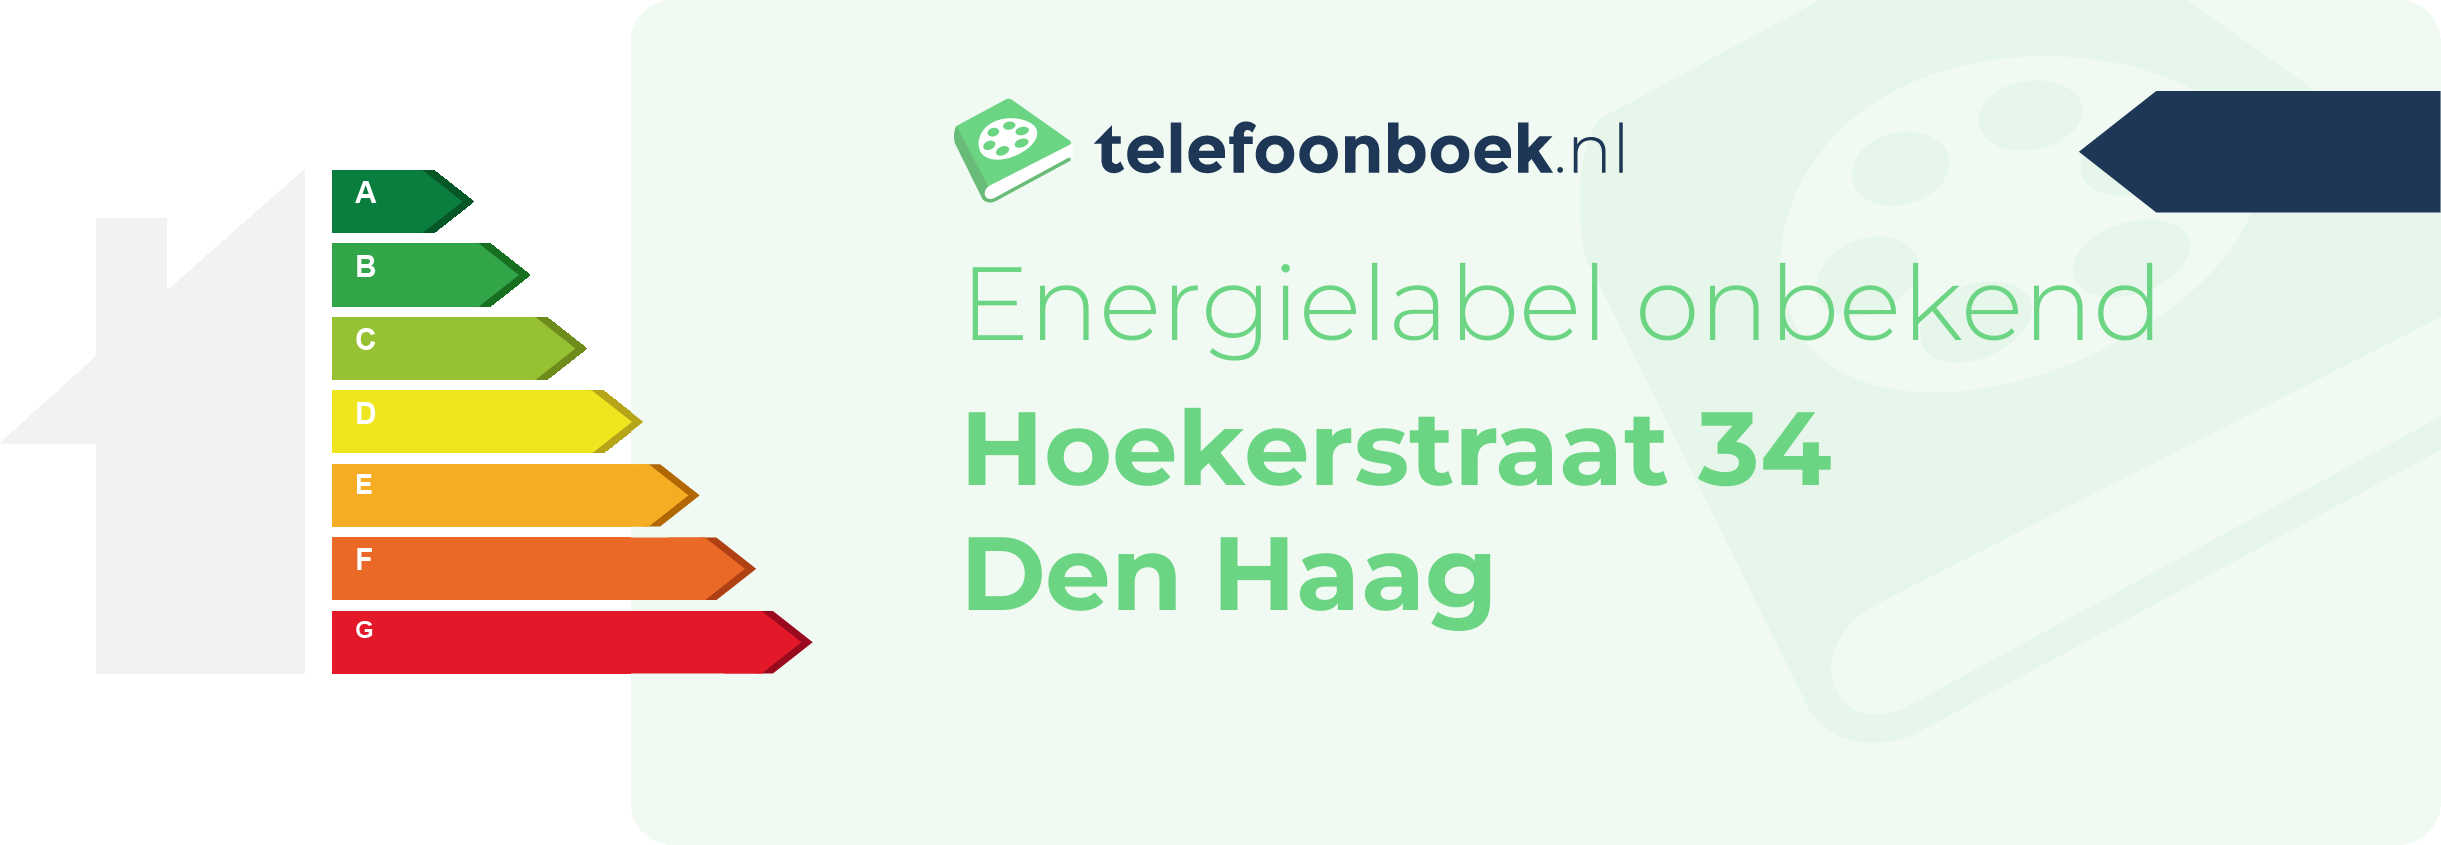 Energielabel Hoekerstraat 34 Den Haag